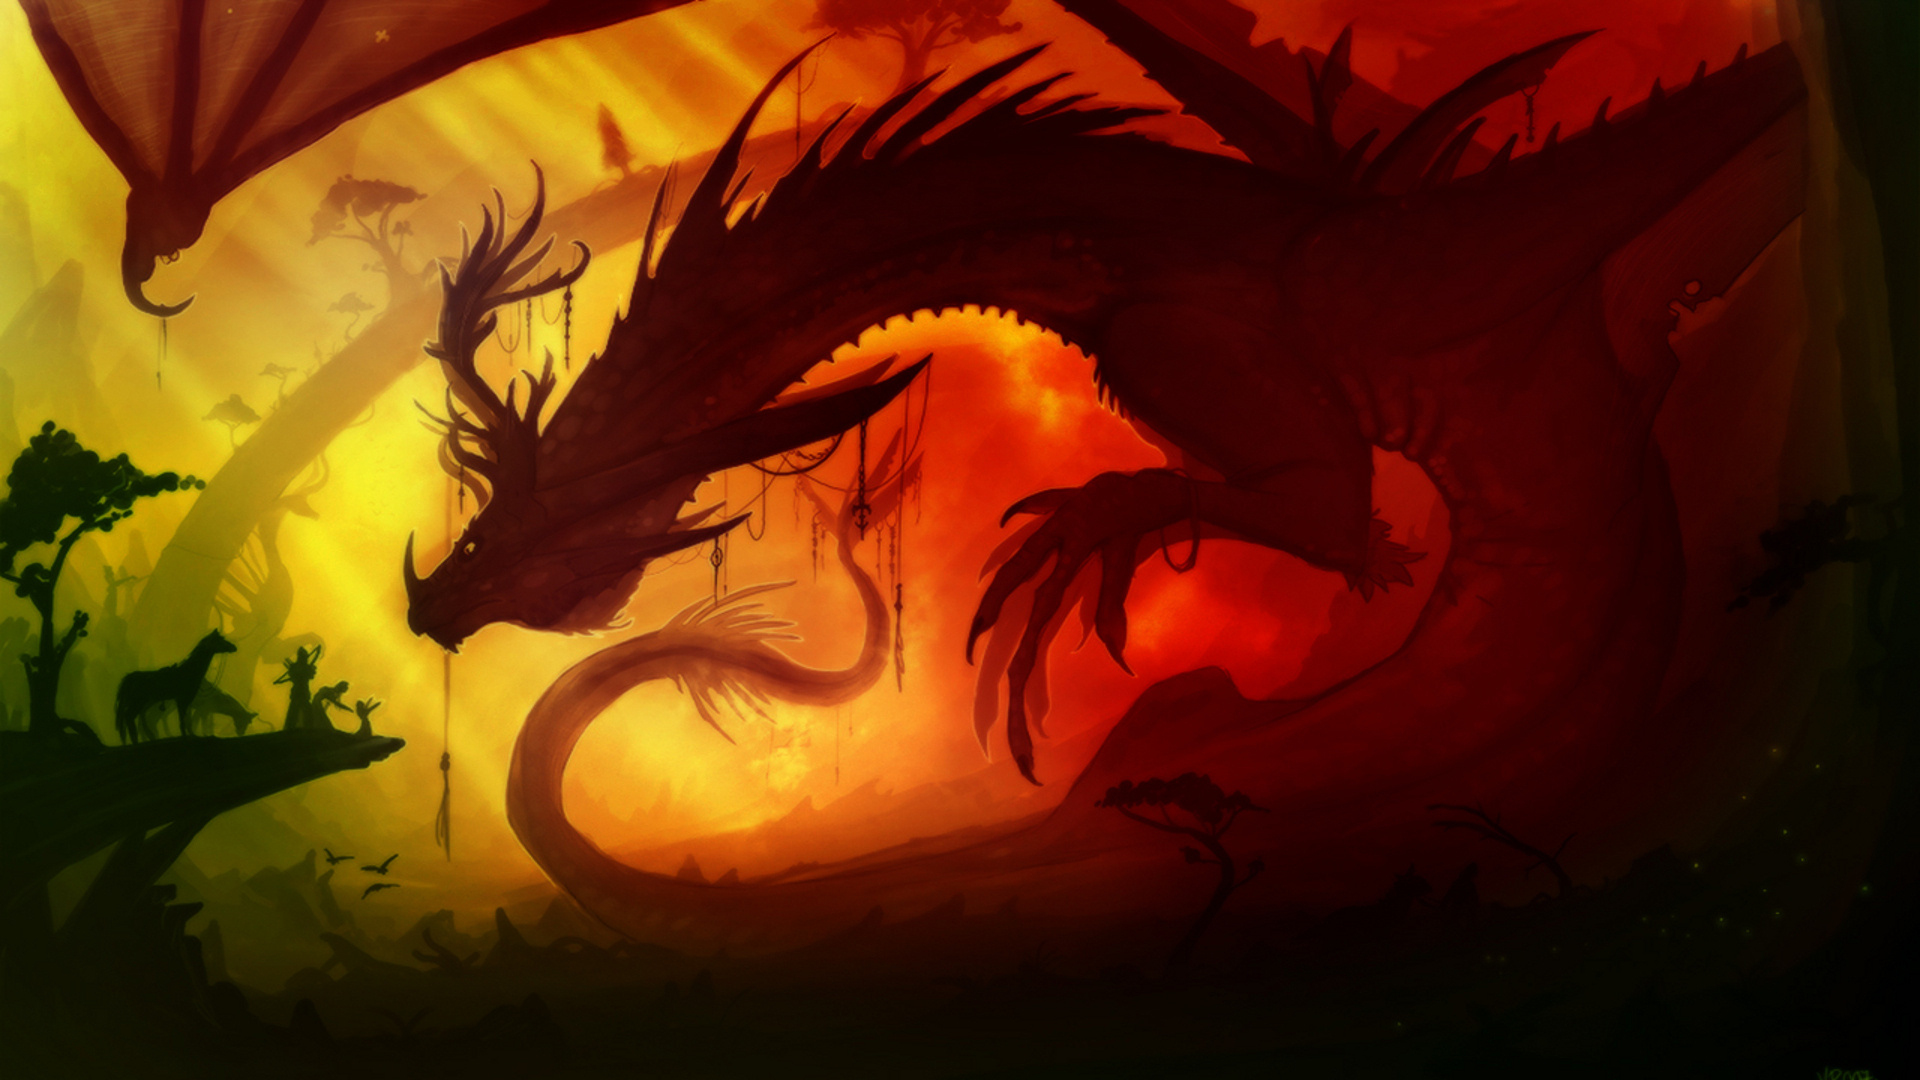 Anime dragon wallpaper